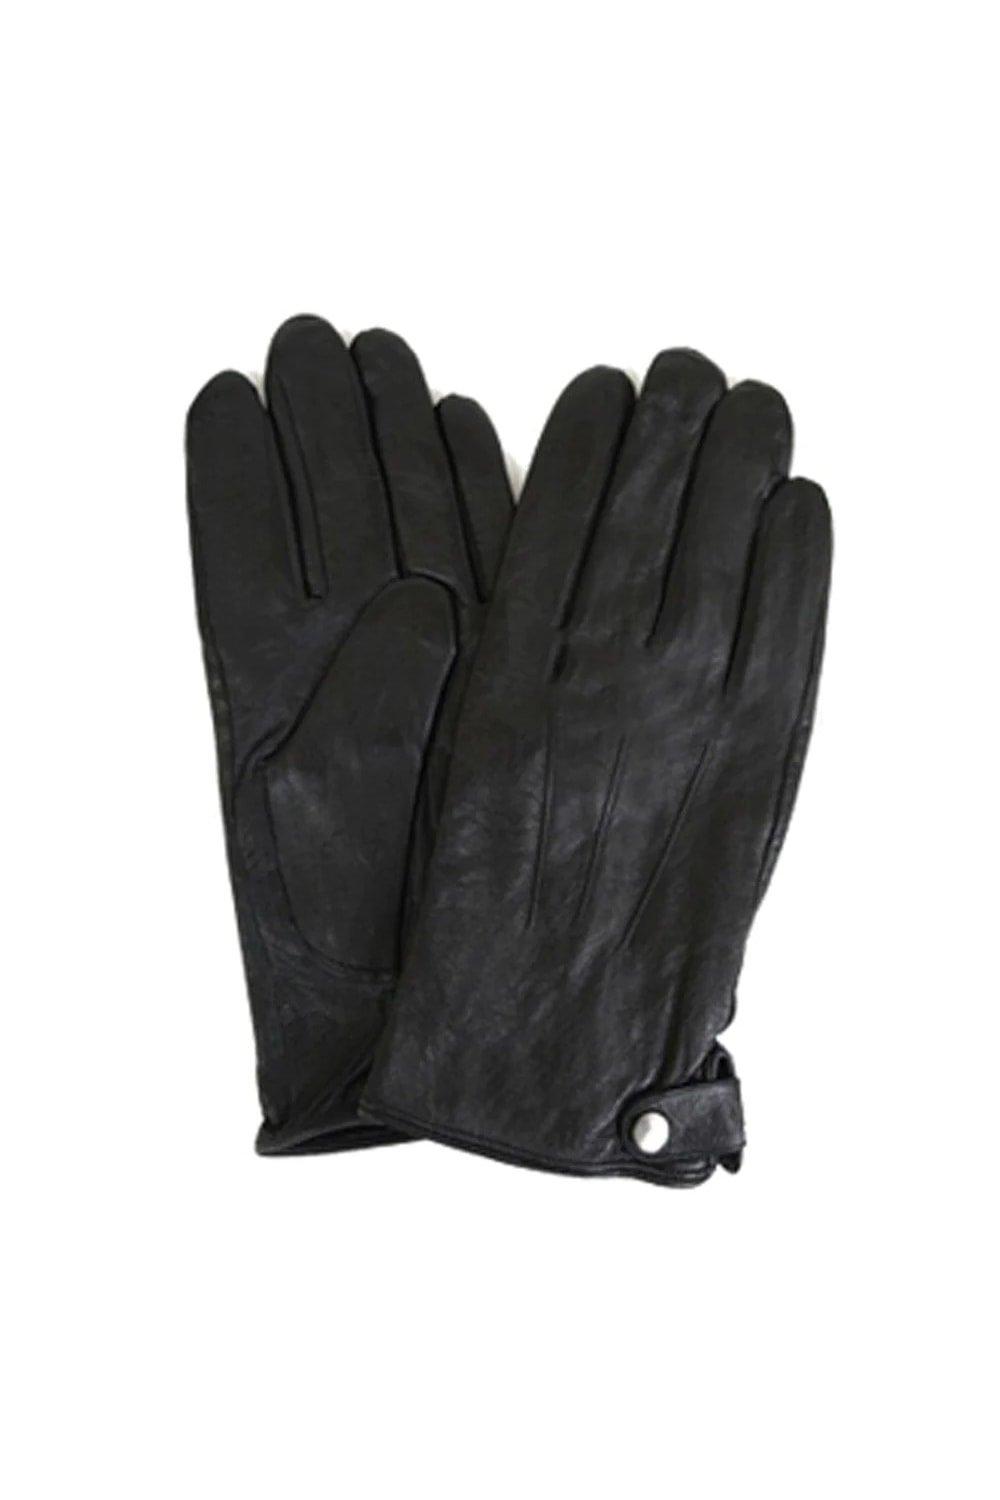 Классические кожаные зимние перчатки Eastern Counties Leather, черный классические кожаные зимние перчатки eastern counties leather коричневый